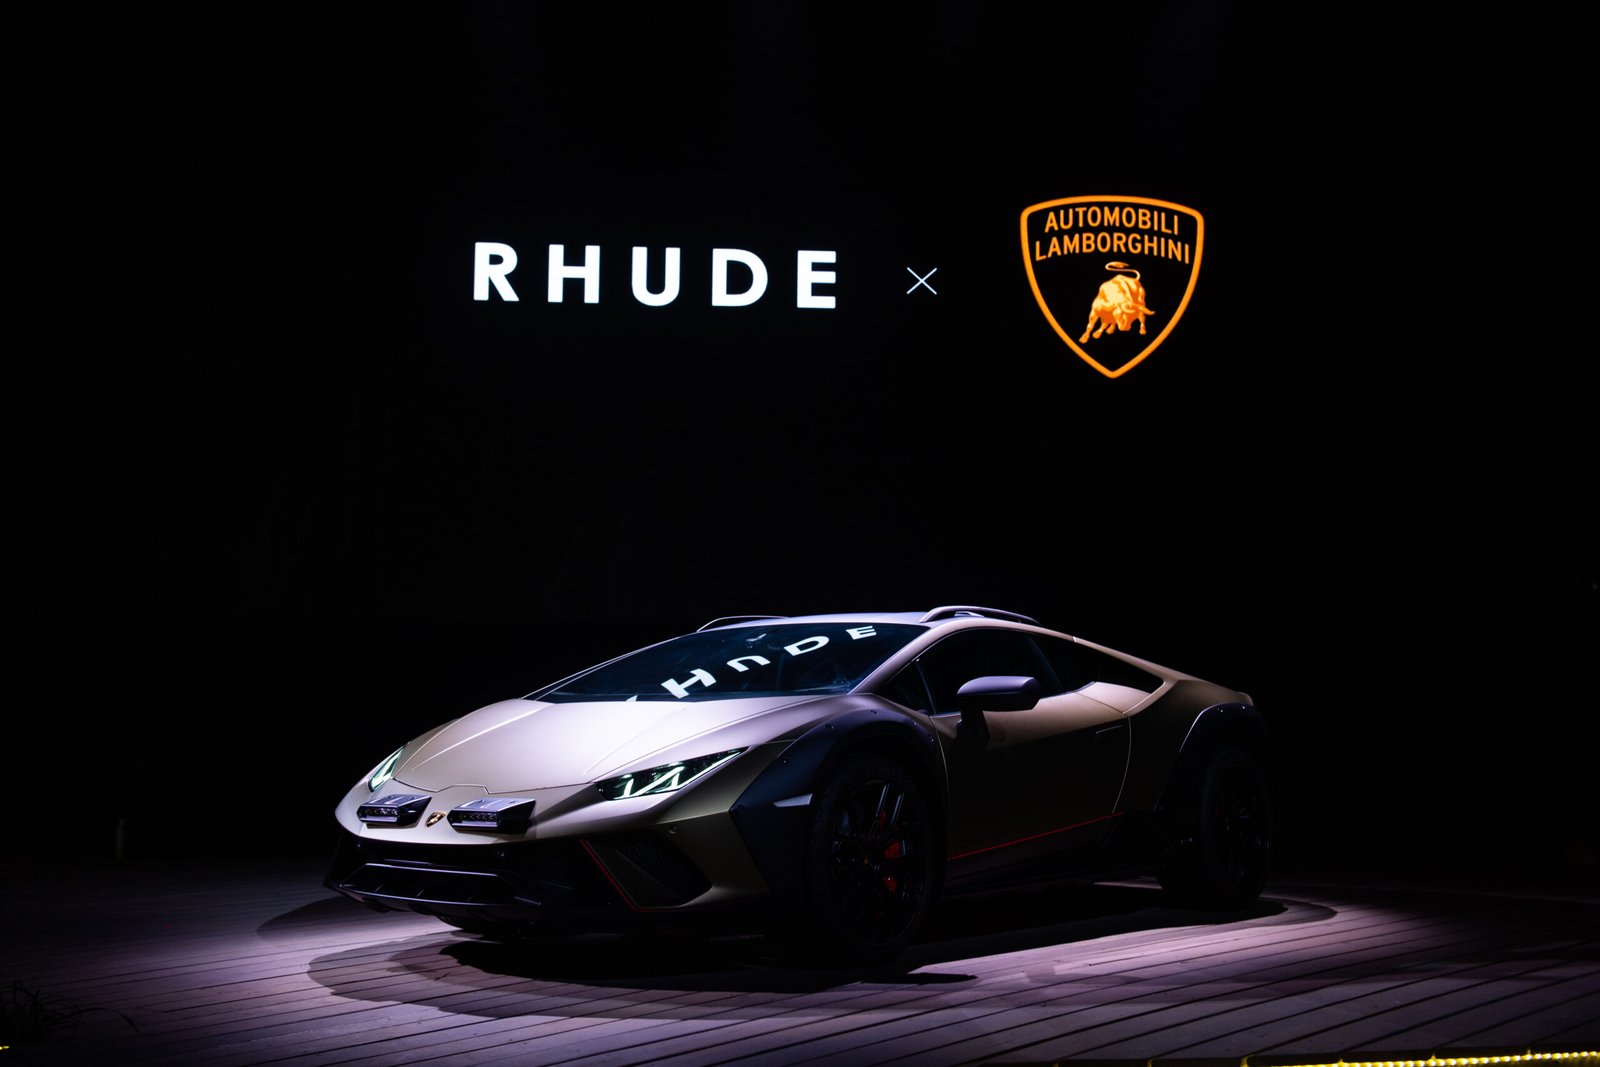 Automobili Lamborghini and Rhude release collaboration teasers